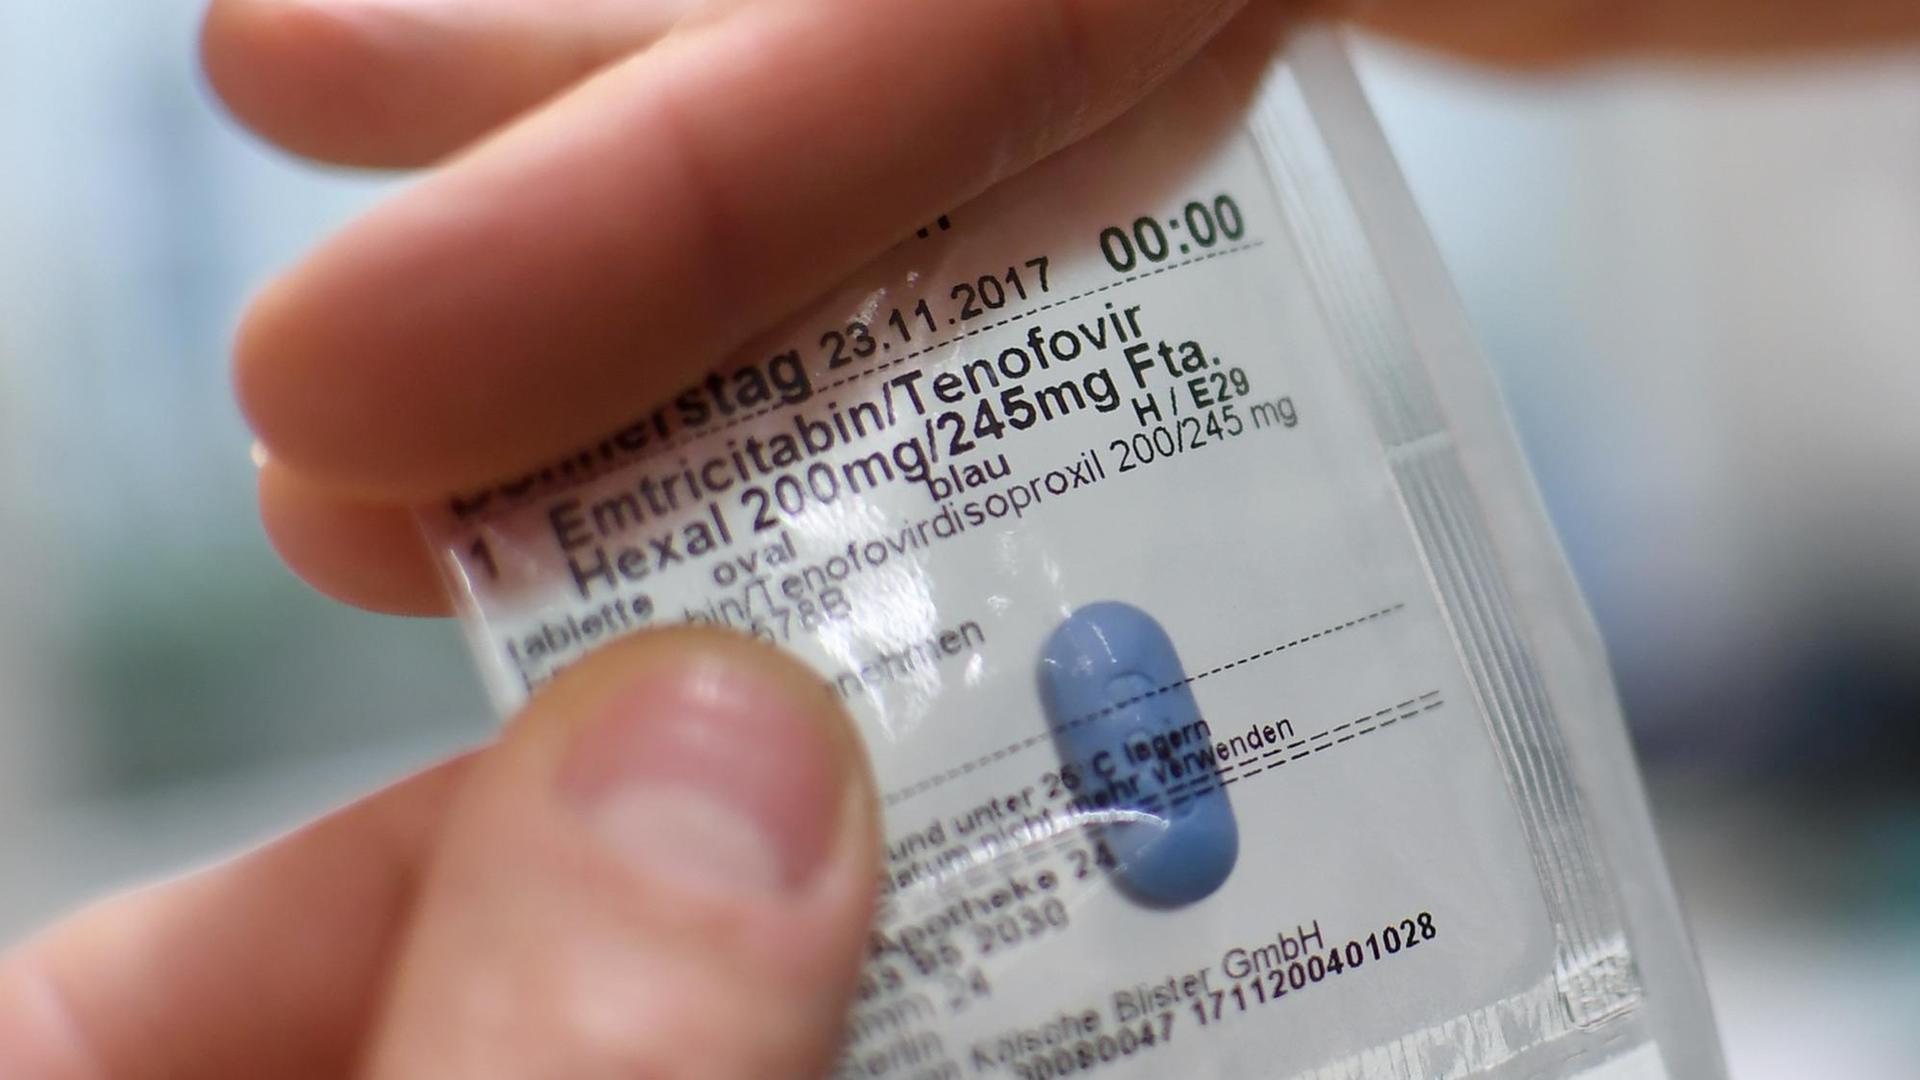 Eine Apothekerin hält am 23.11.2017 in Berlin einen Blister mit dem Medikament Emtricitabin in der Hand. In einem solchem Blister werden die Medikamente für HIV-Vorbeugung (PrEP, Prä-Expositions-Prophylaxe) mit Tabletten ausgegeben.